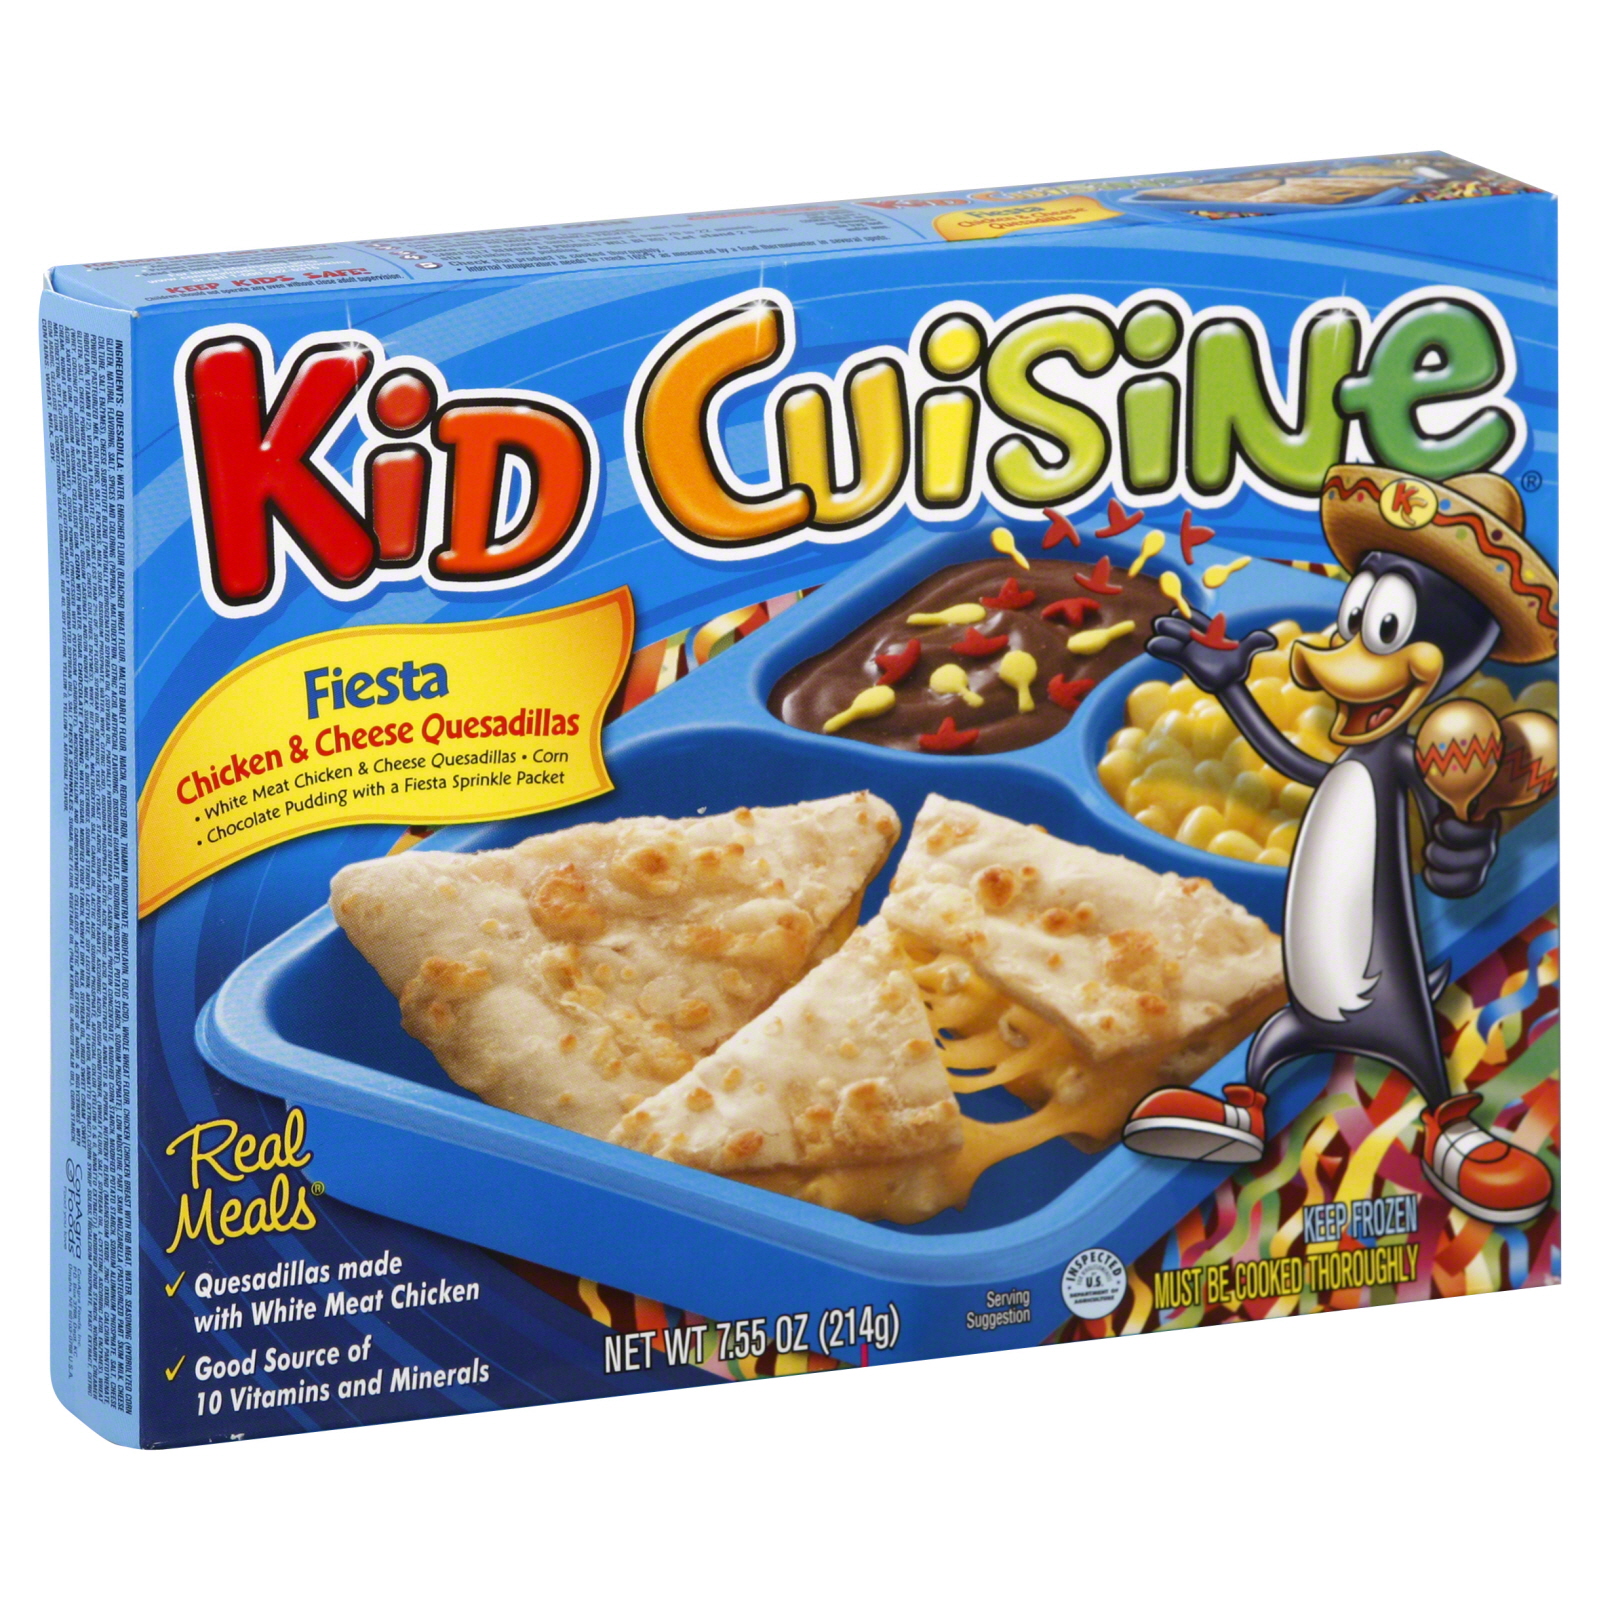 Kid Cuisine Chicken & Cheese Quesadillas, Fiesta, 7.55 oz (214 g)